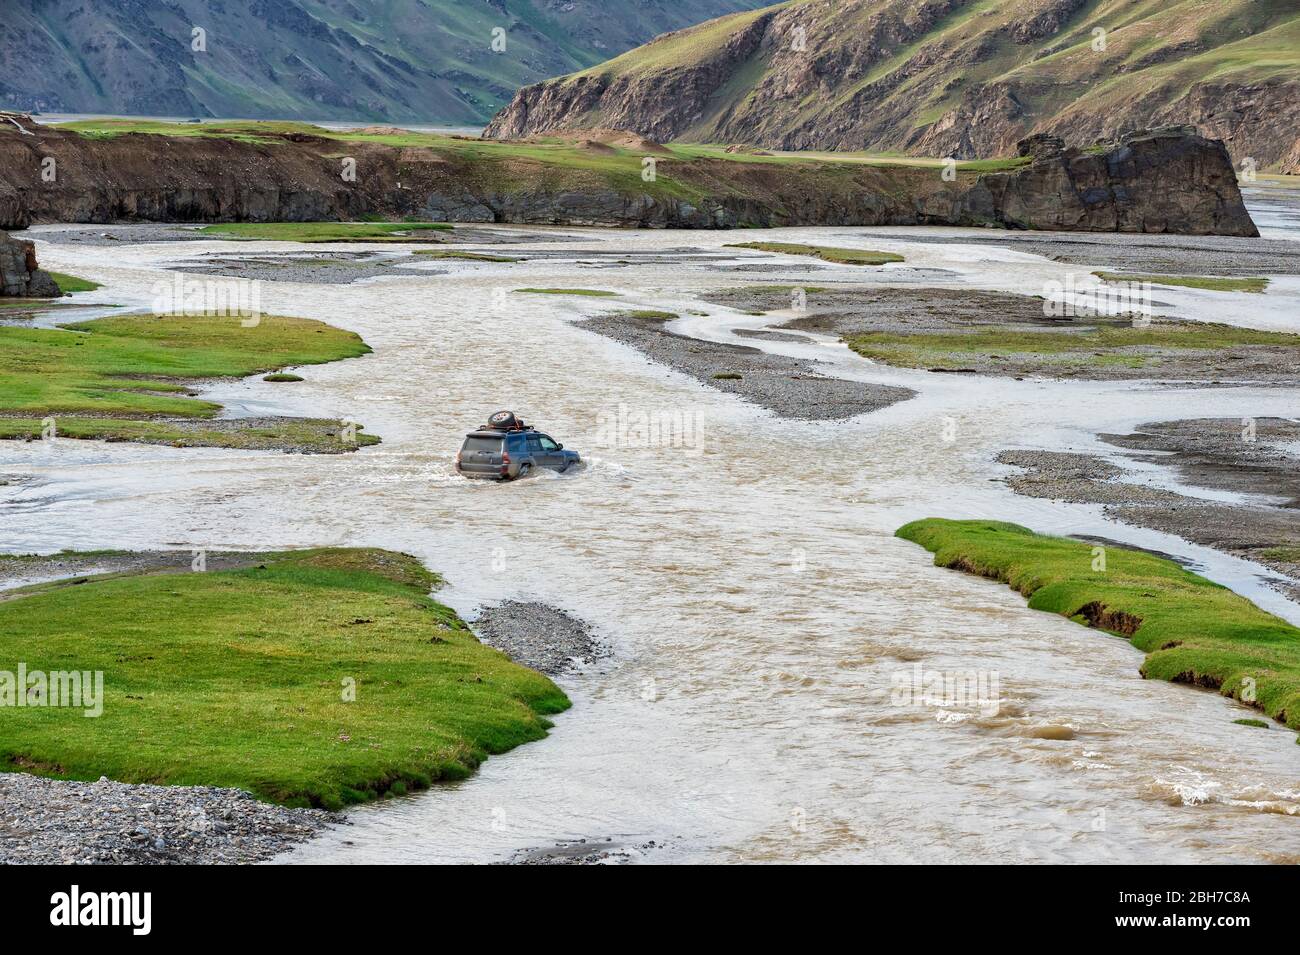 Per trazione integrale che attraversa un fiume, Kurumduk valley, provincia di Naryn, Kirghizistan, Asia centrale Foto Stock